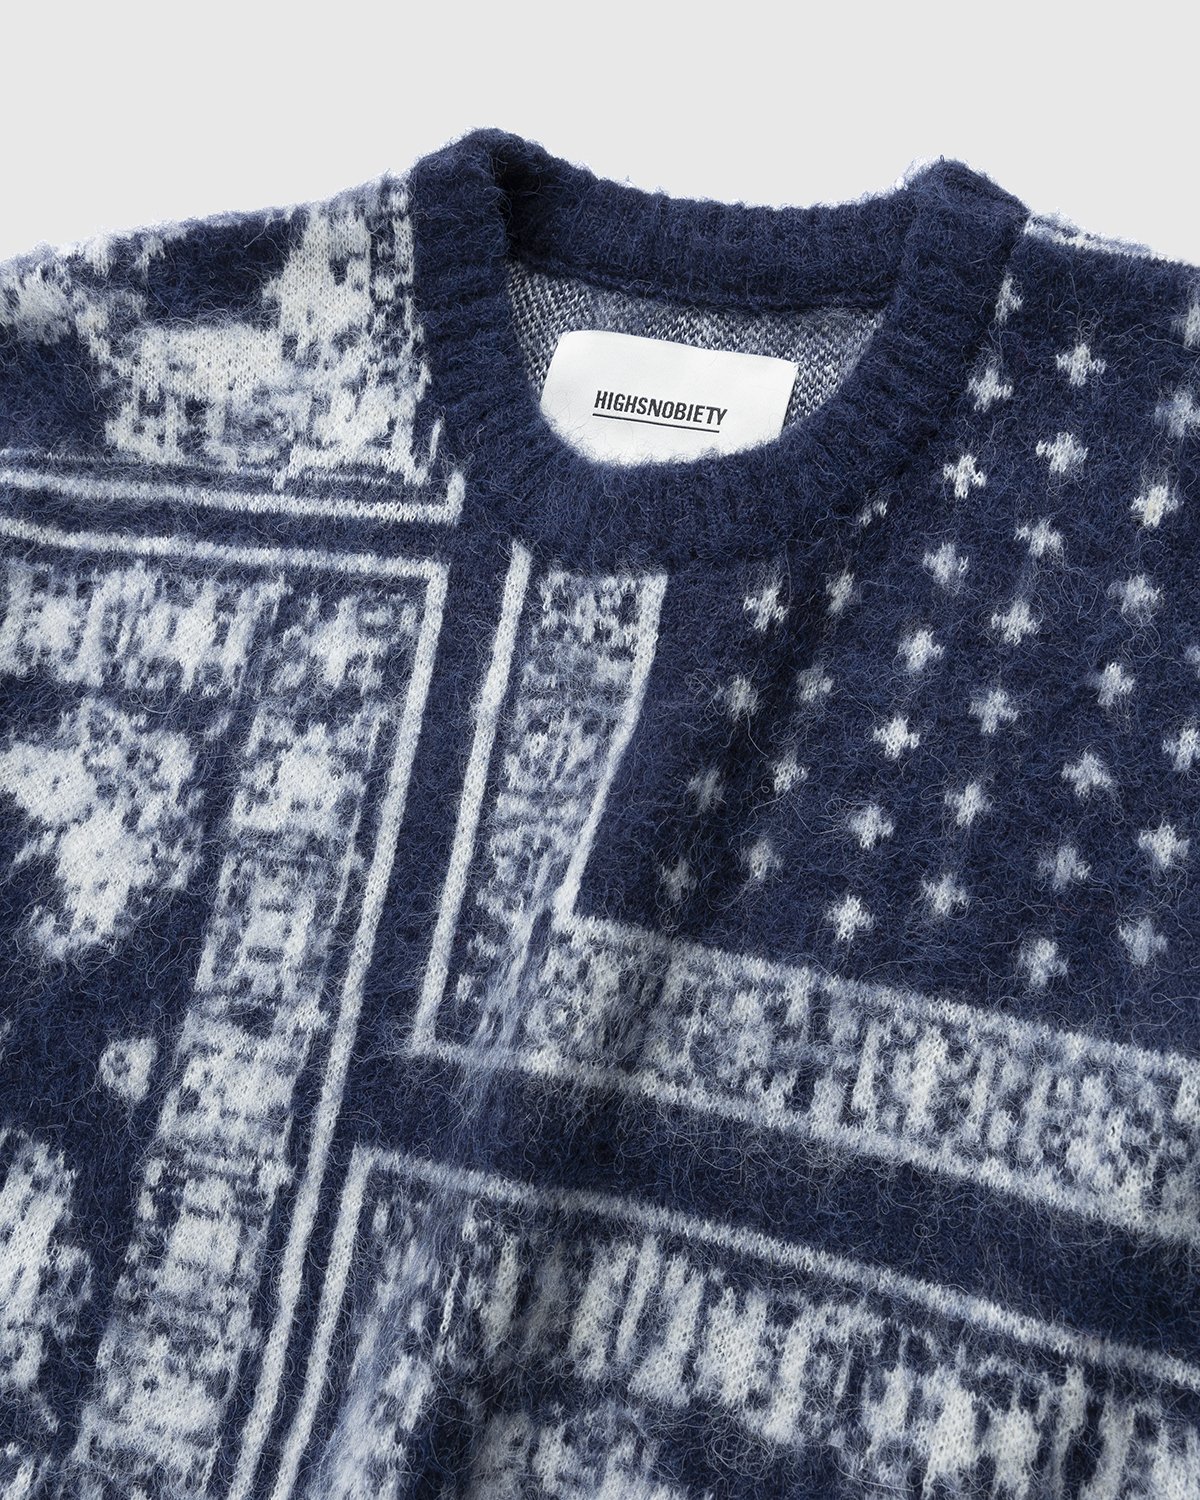 Highsnobiety - Bandana Alpaca Sweater Blue - Clothing - Blue - Image 3